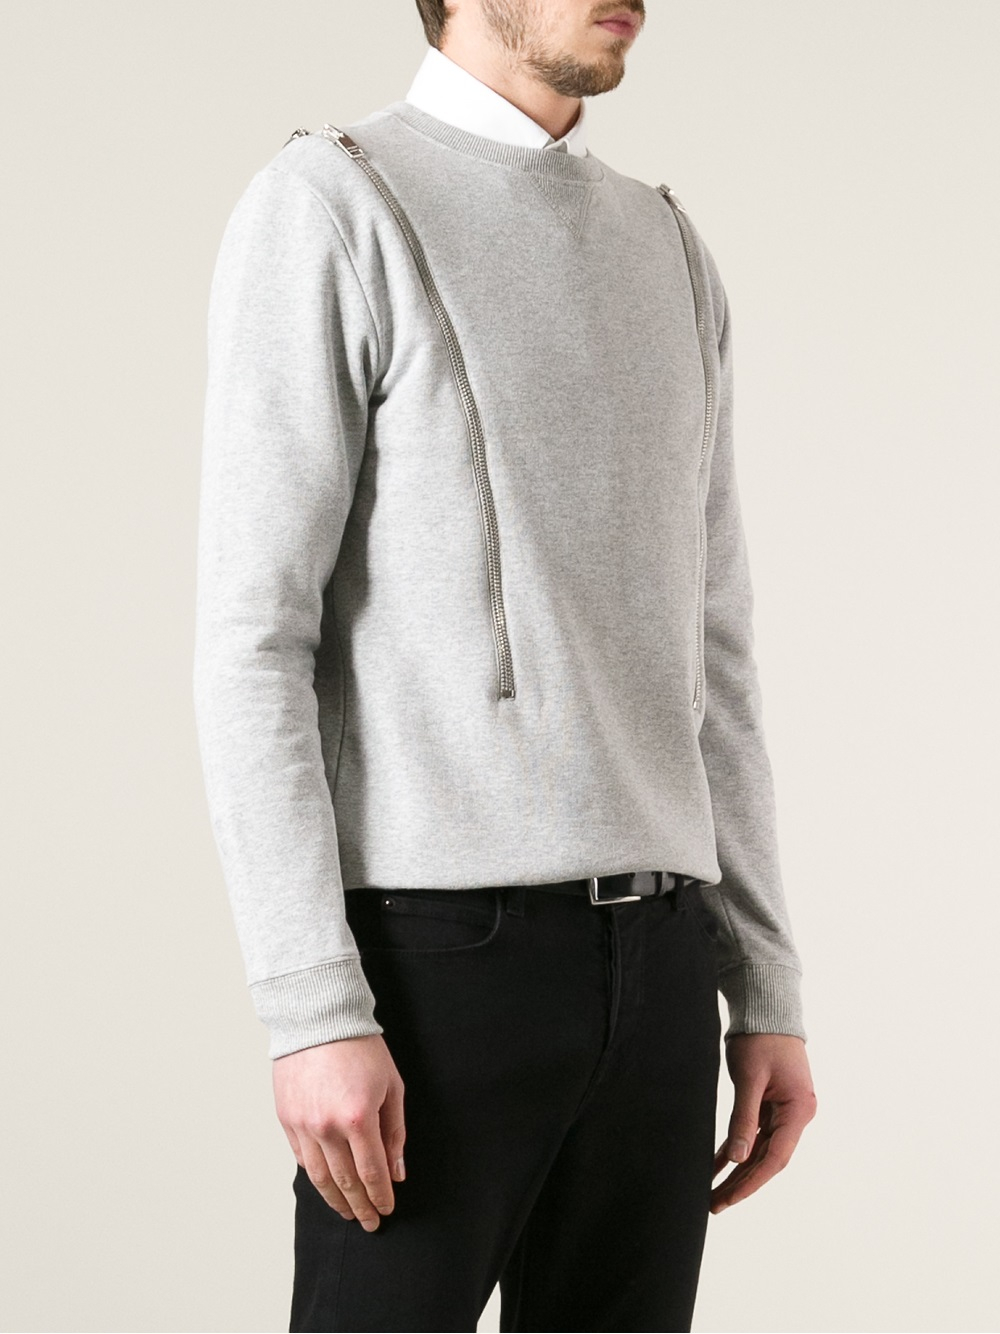 Saint Laurent Horizontal Zip Sweater in Grey (Gray) for Men - Lyst